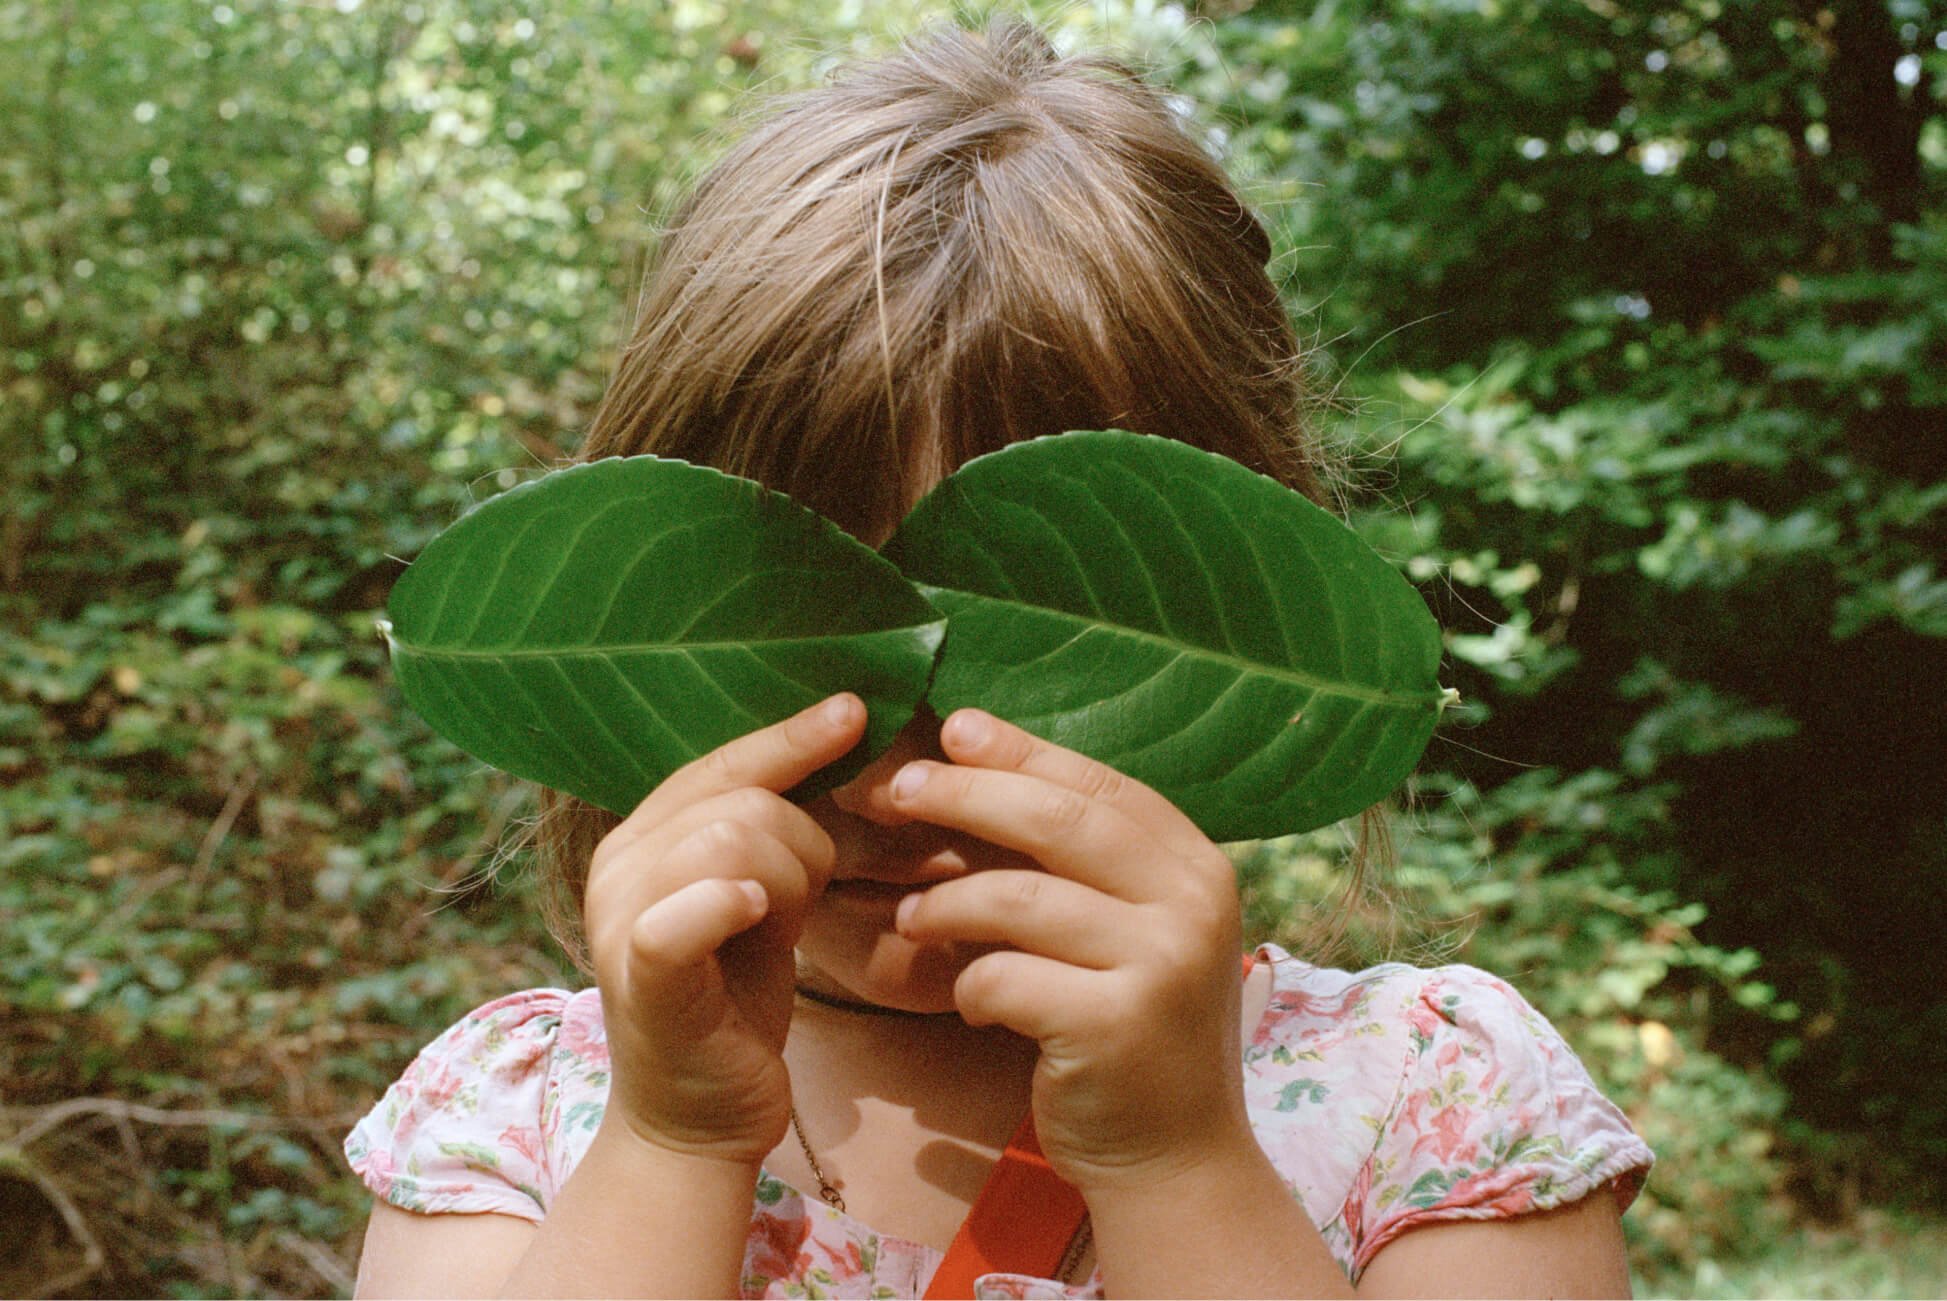 Una ragazzina in una zona boschiva si copre entrambi gli occhi con delle grandi foglie.